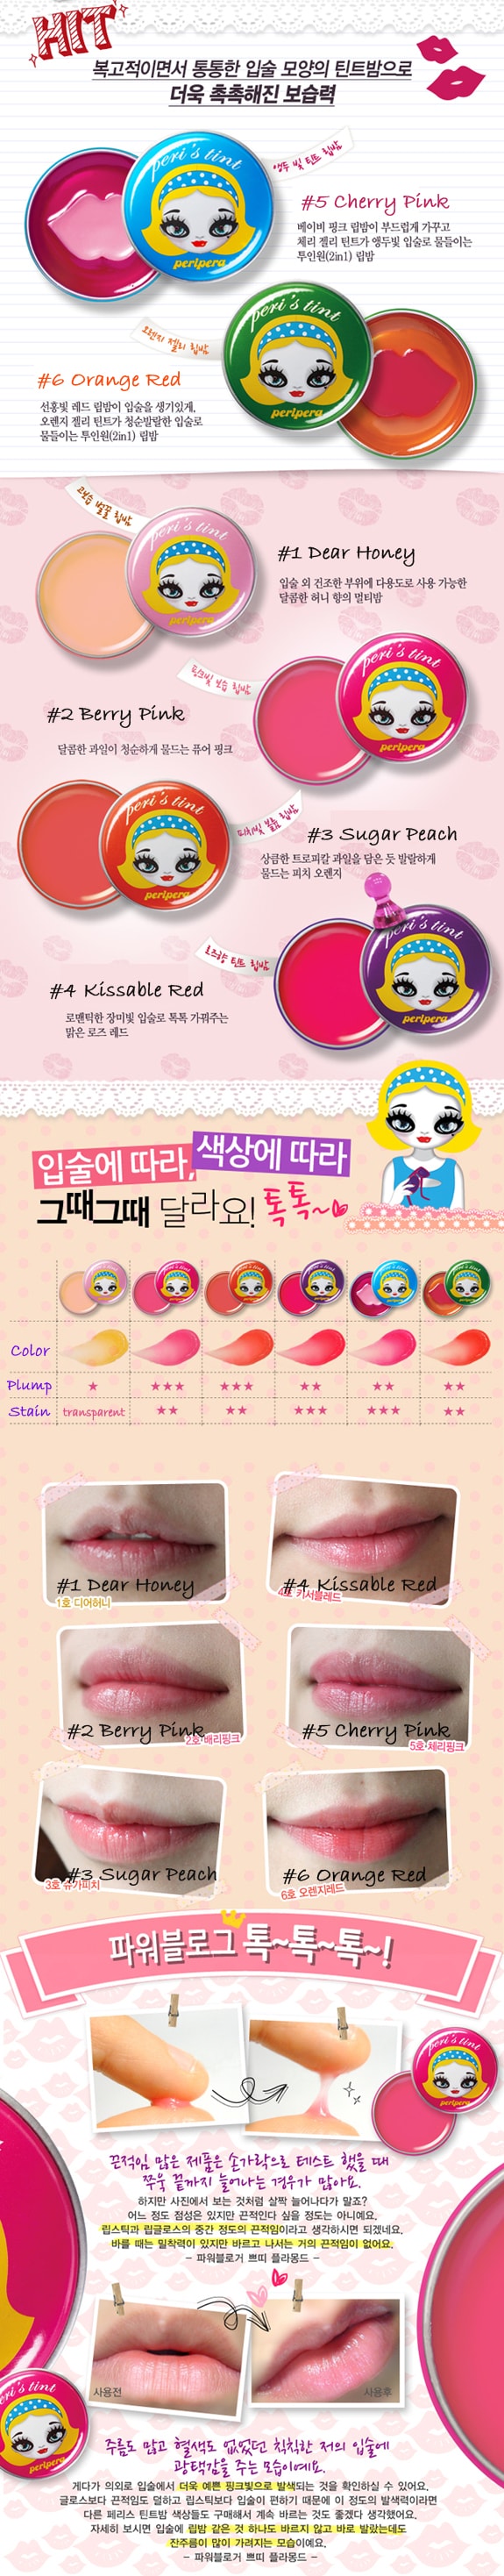 韩国 PERIPERA Peri's tint 润唇膏 #05 Cherry Pink 1pc